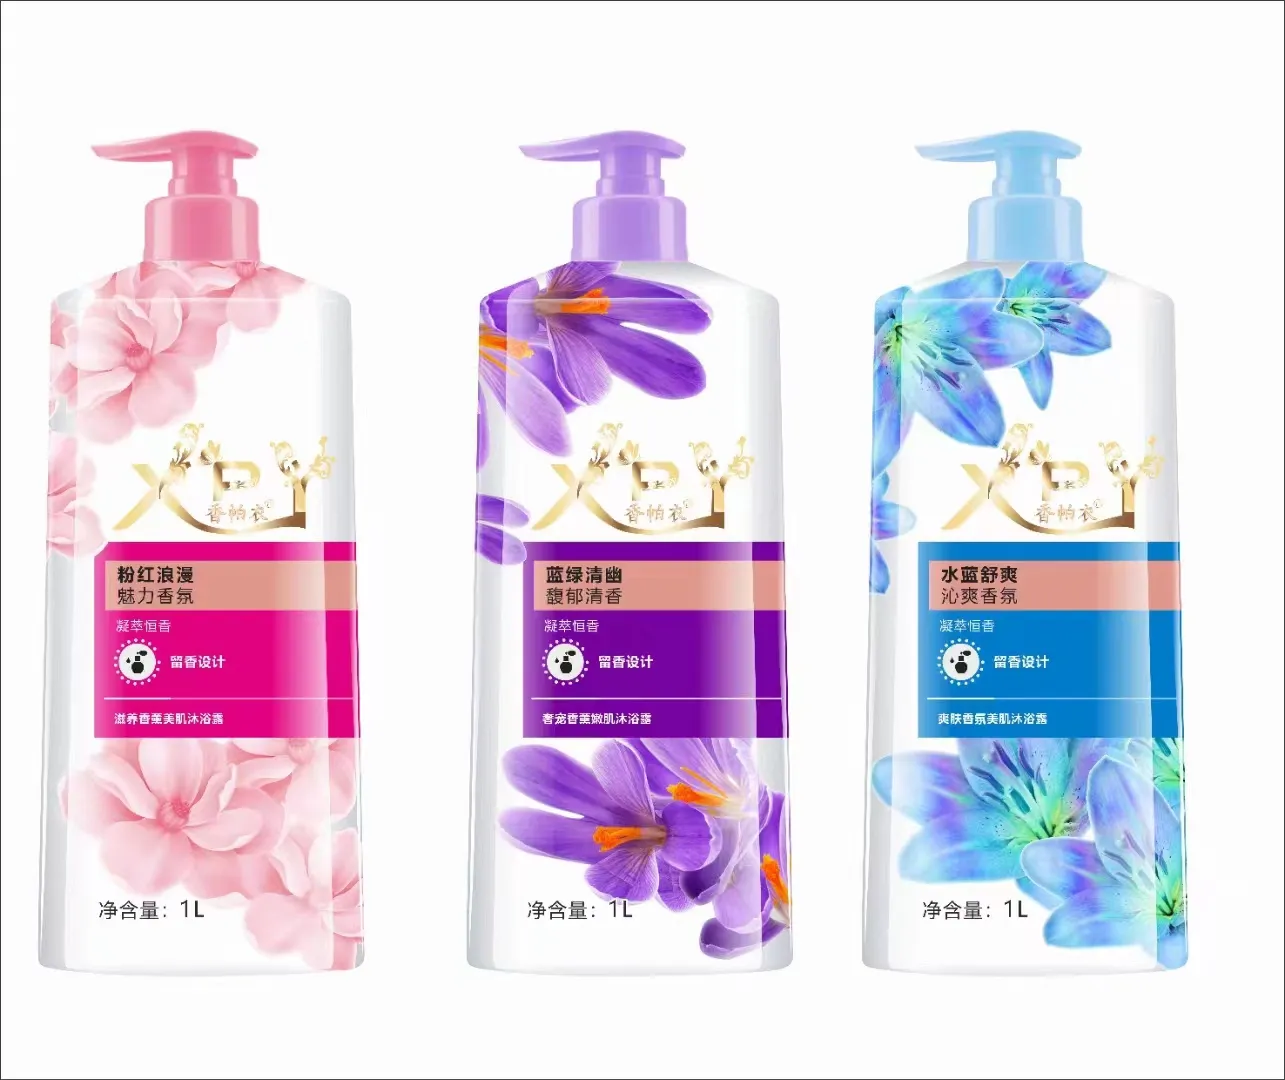 Gel de banho de 3 cores para lojas de marca própria, hidratante refrescante e nutritivo, fragrância de longa duração, bolha branqueadora química